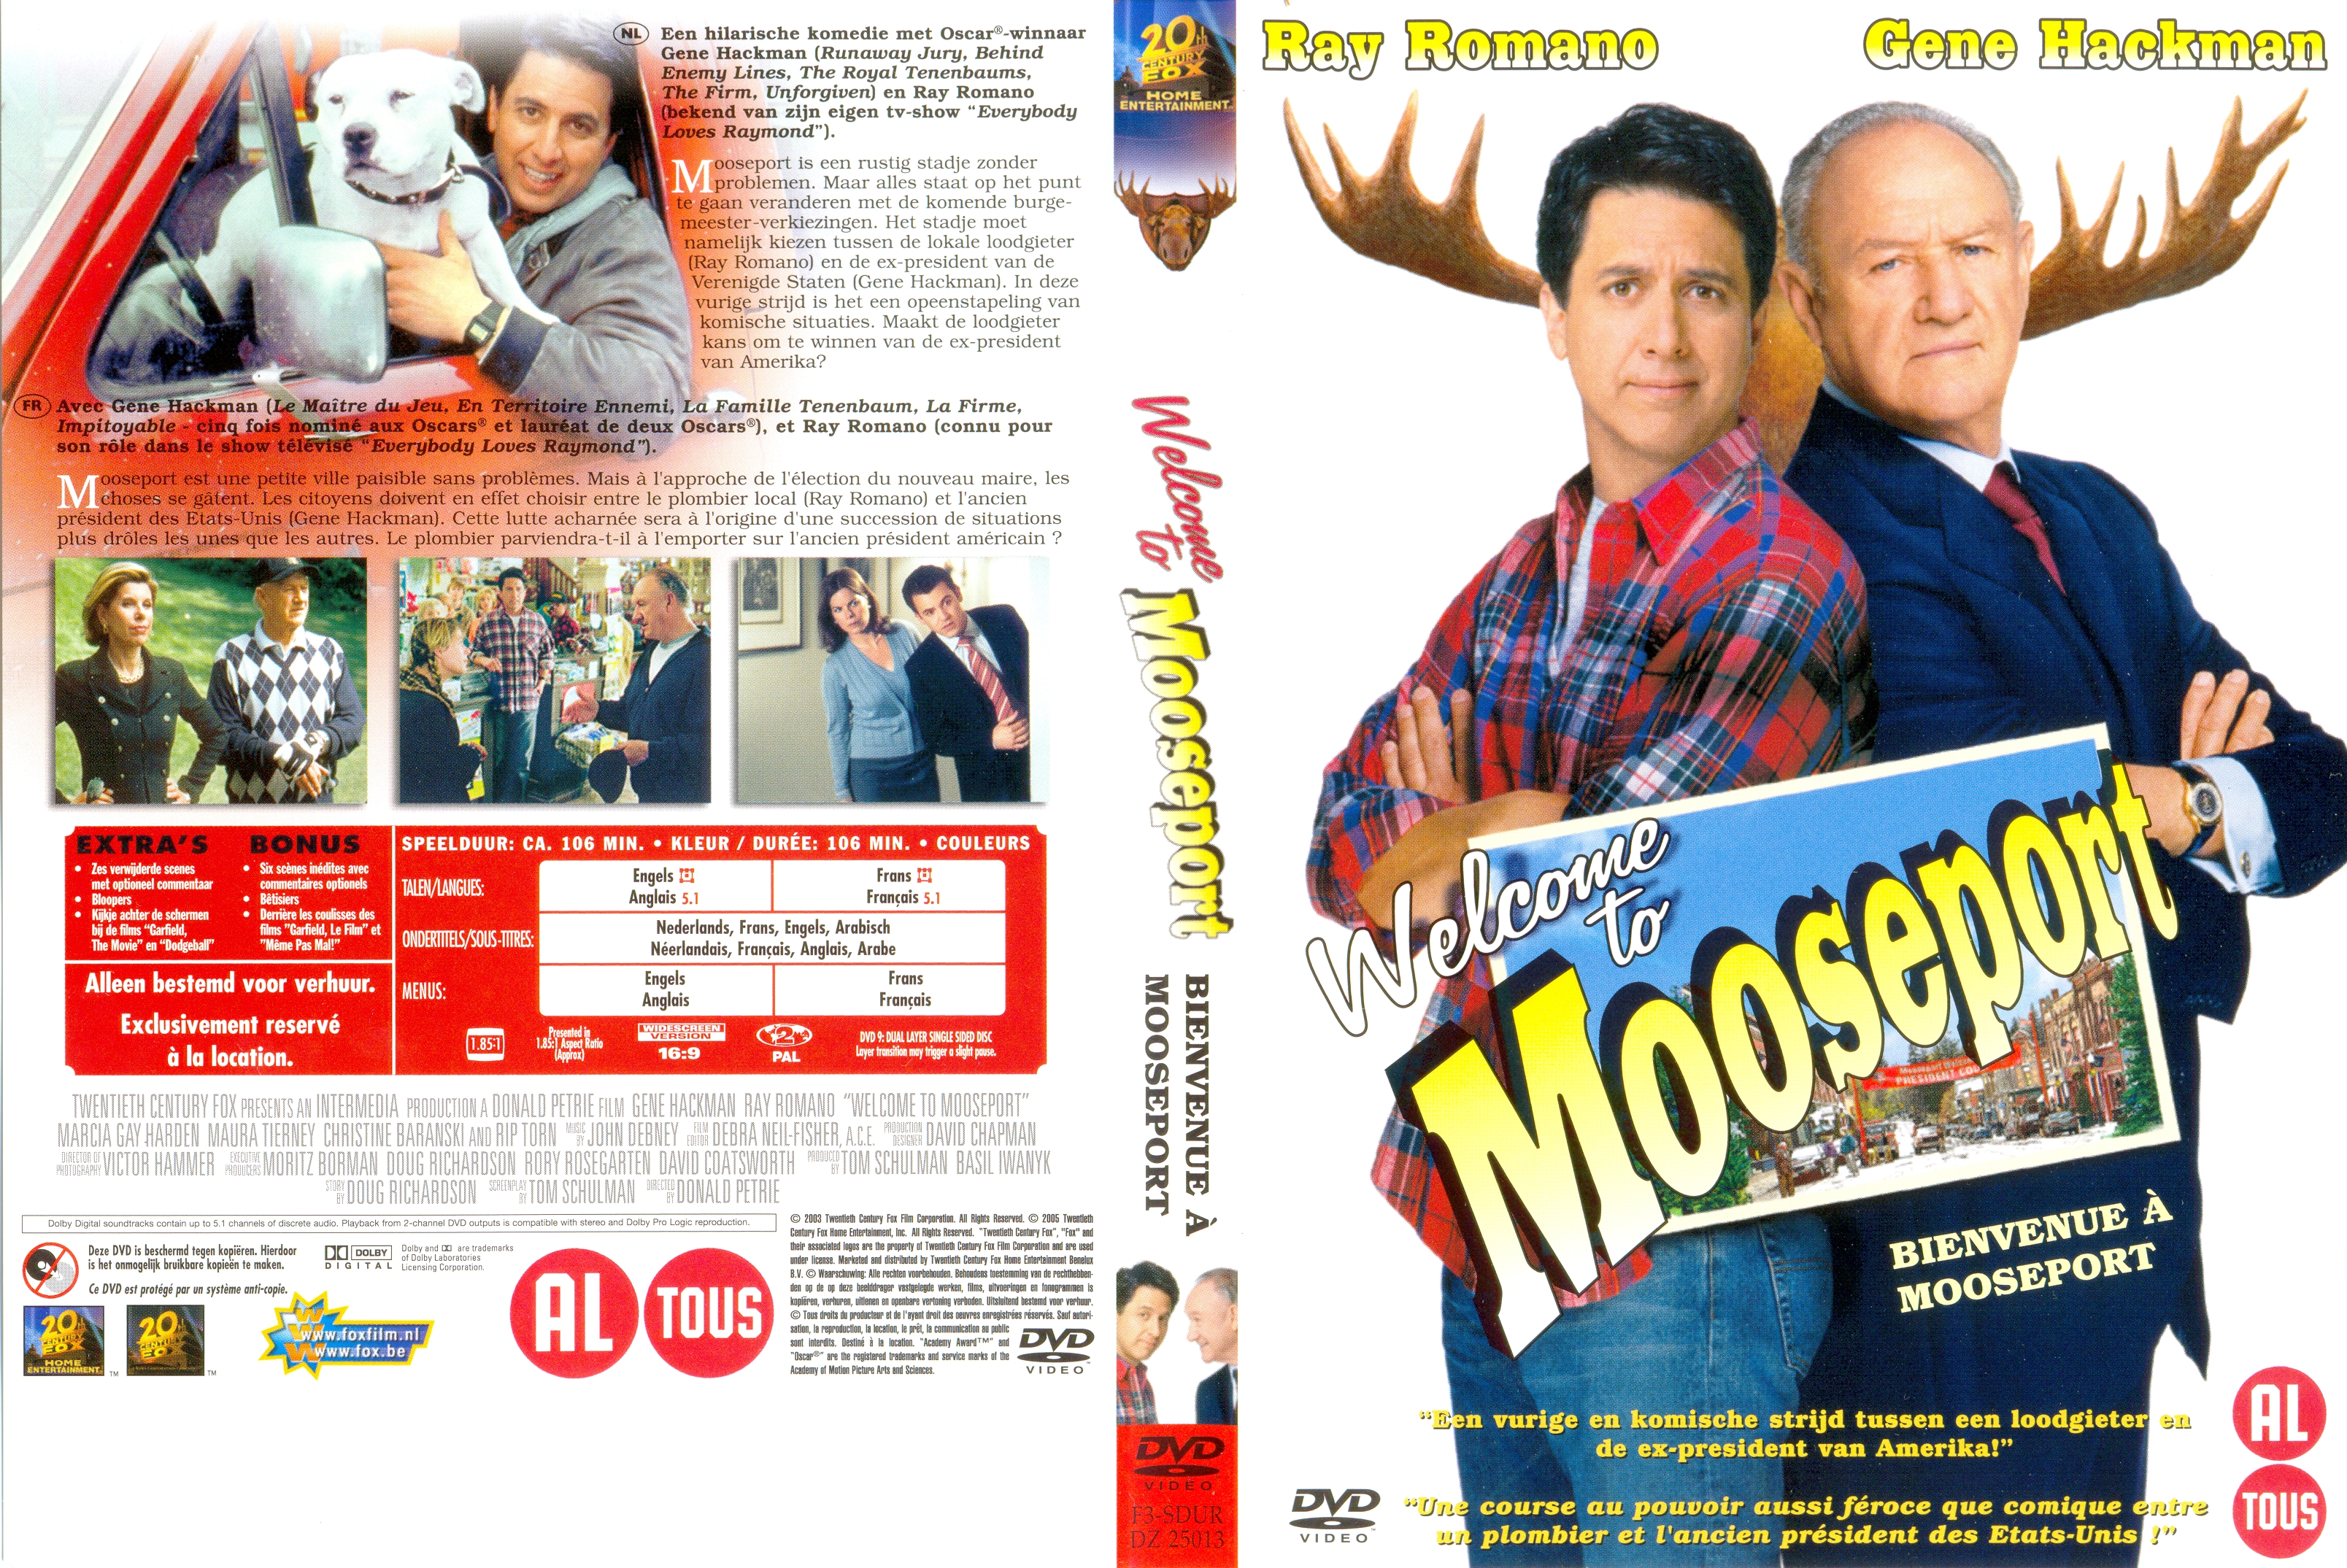 Jaquette DVD Bienvenue  Mooseport v2